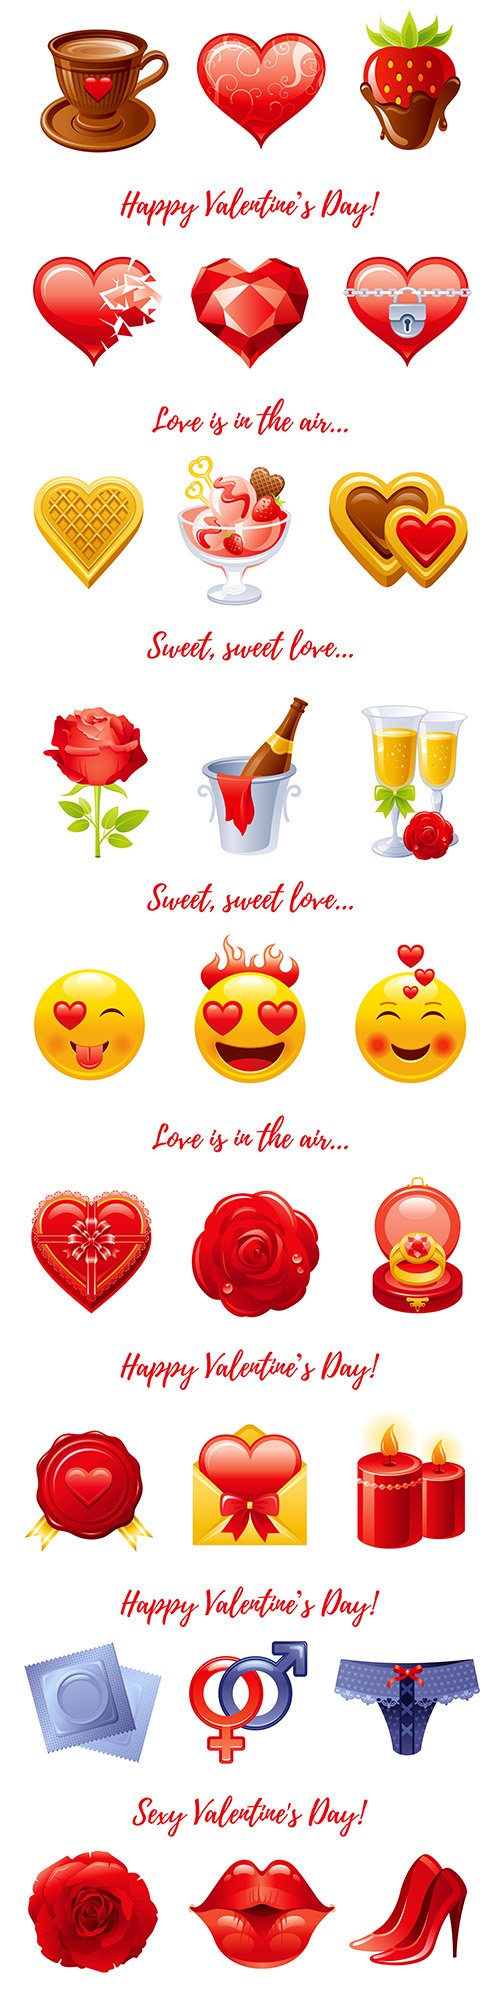 Happy Valentine's Day cartoon banner elements